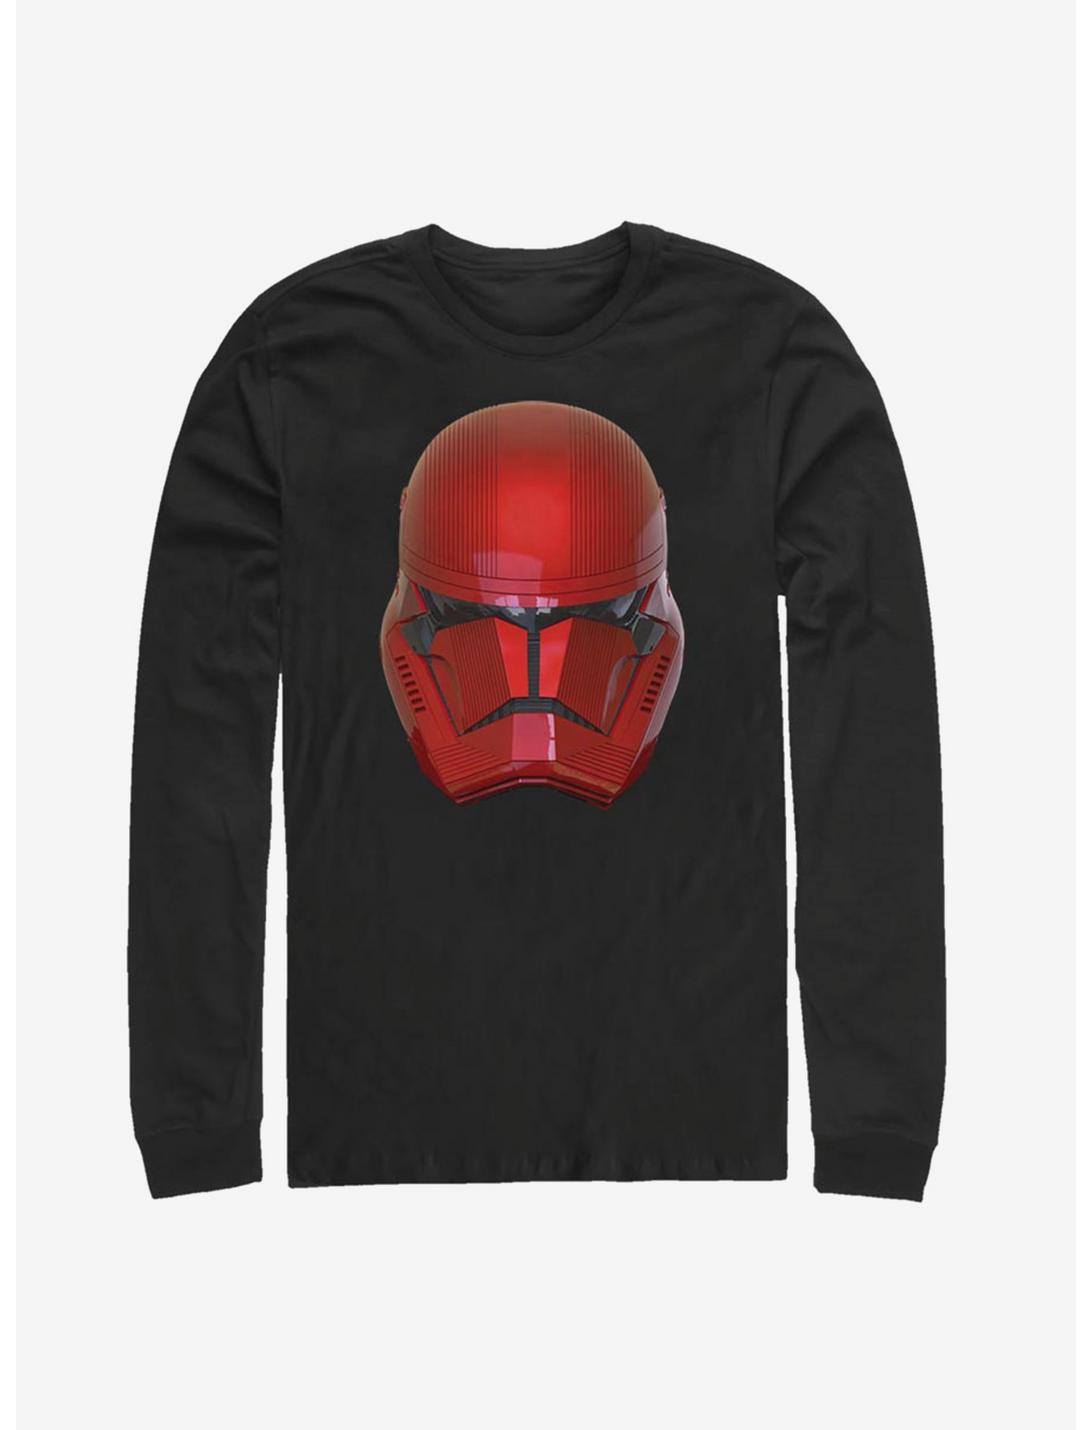 Star Wars Episode IX The Rise Of Skywalker Red Helm Long-Sleeve T-Shirt, BLACK, hi-res